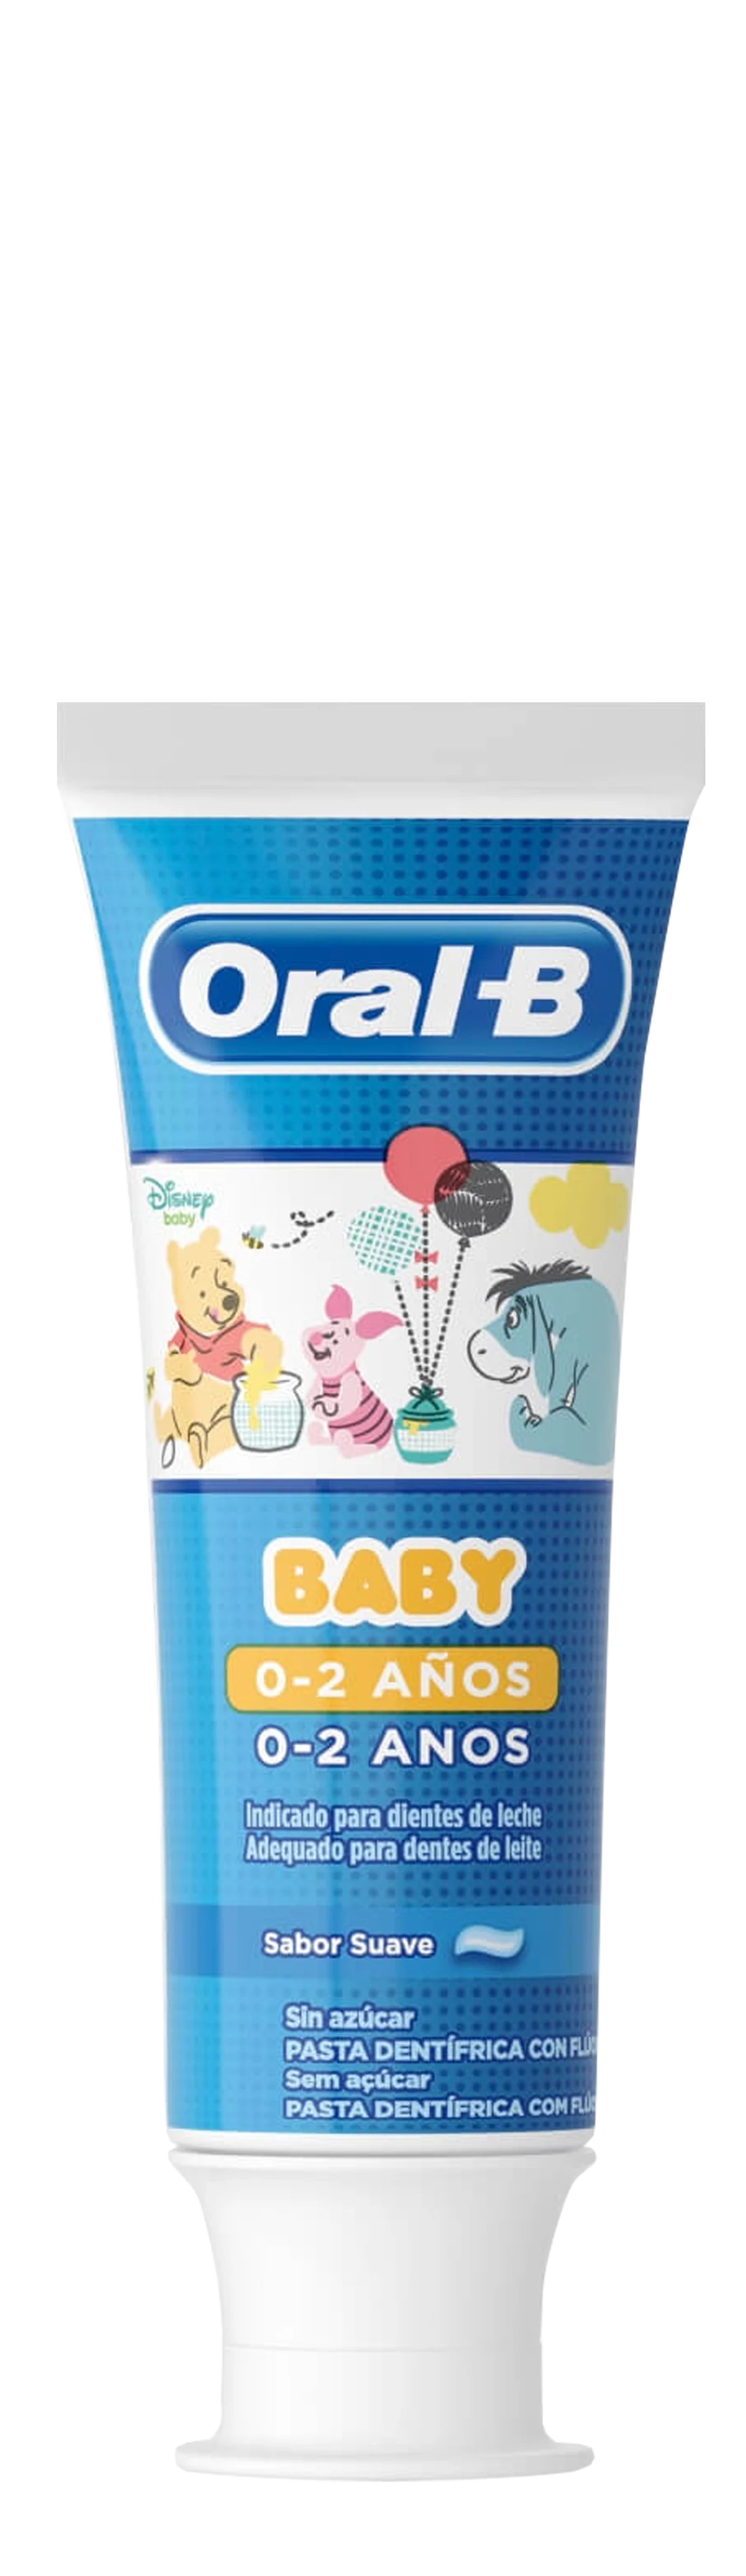 Oral-B Baby Winnie The Pooh Pasta Dentífrica 75 ml 